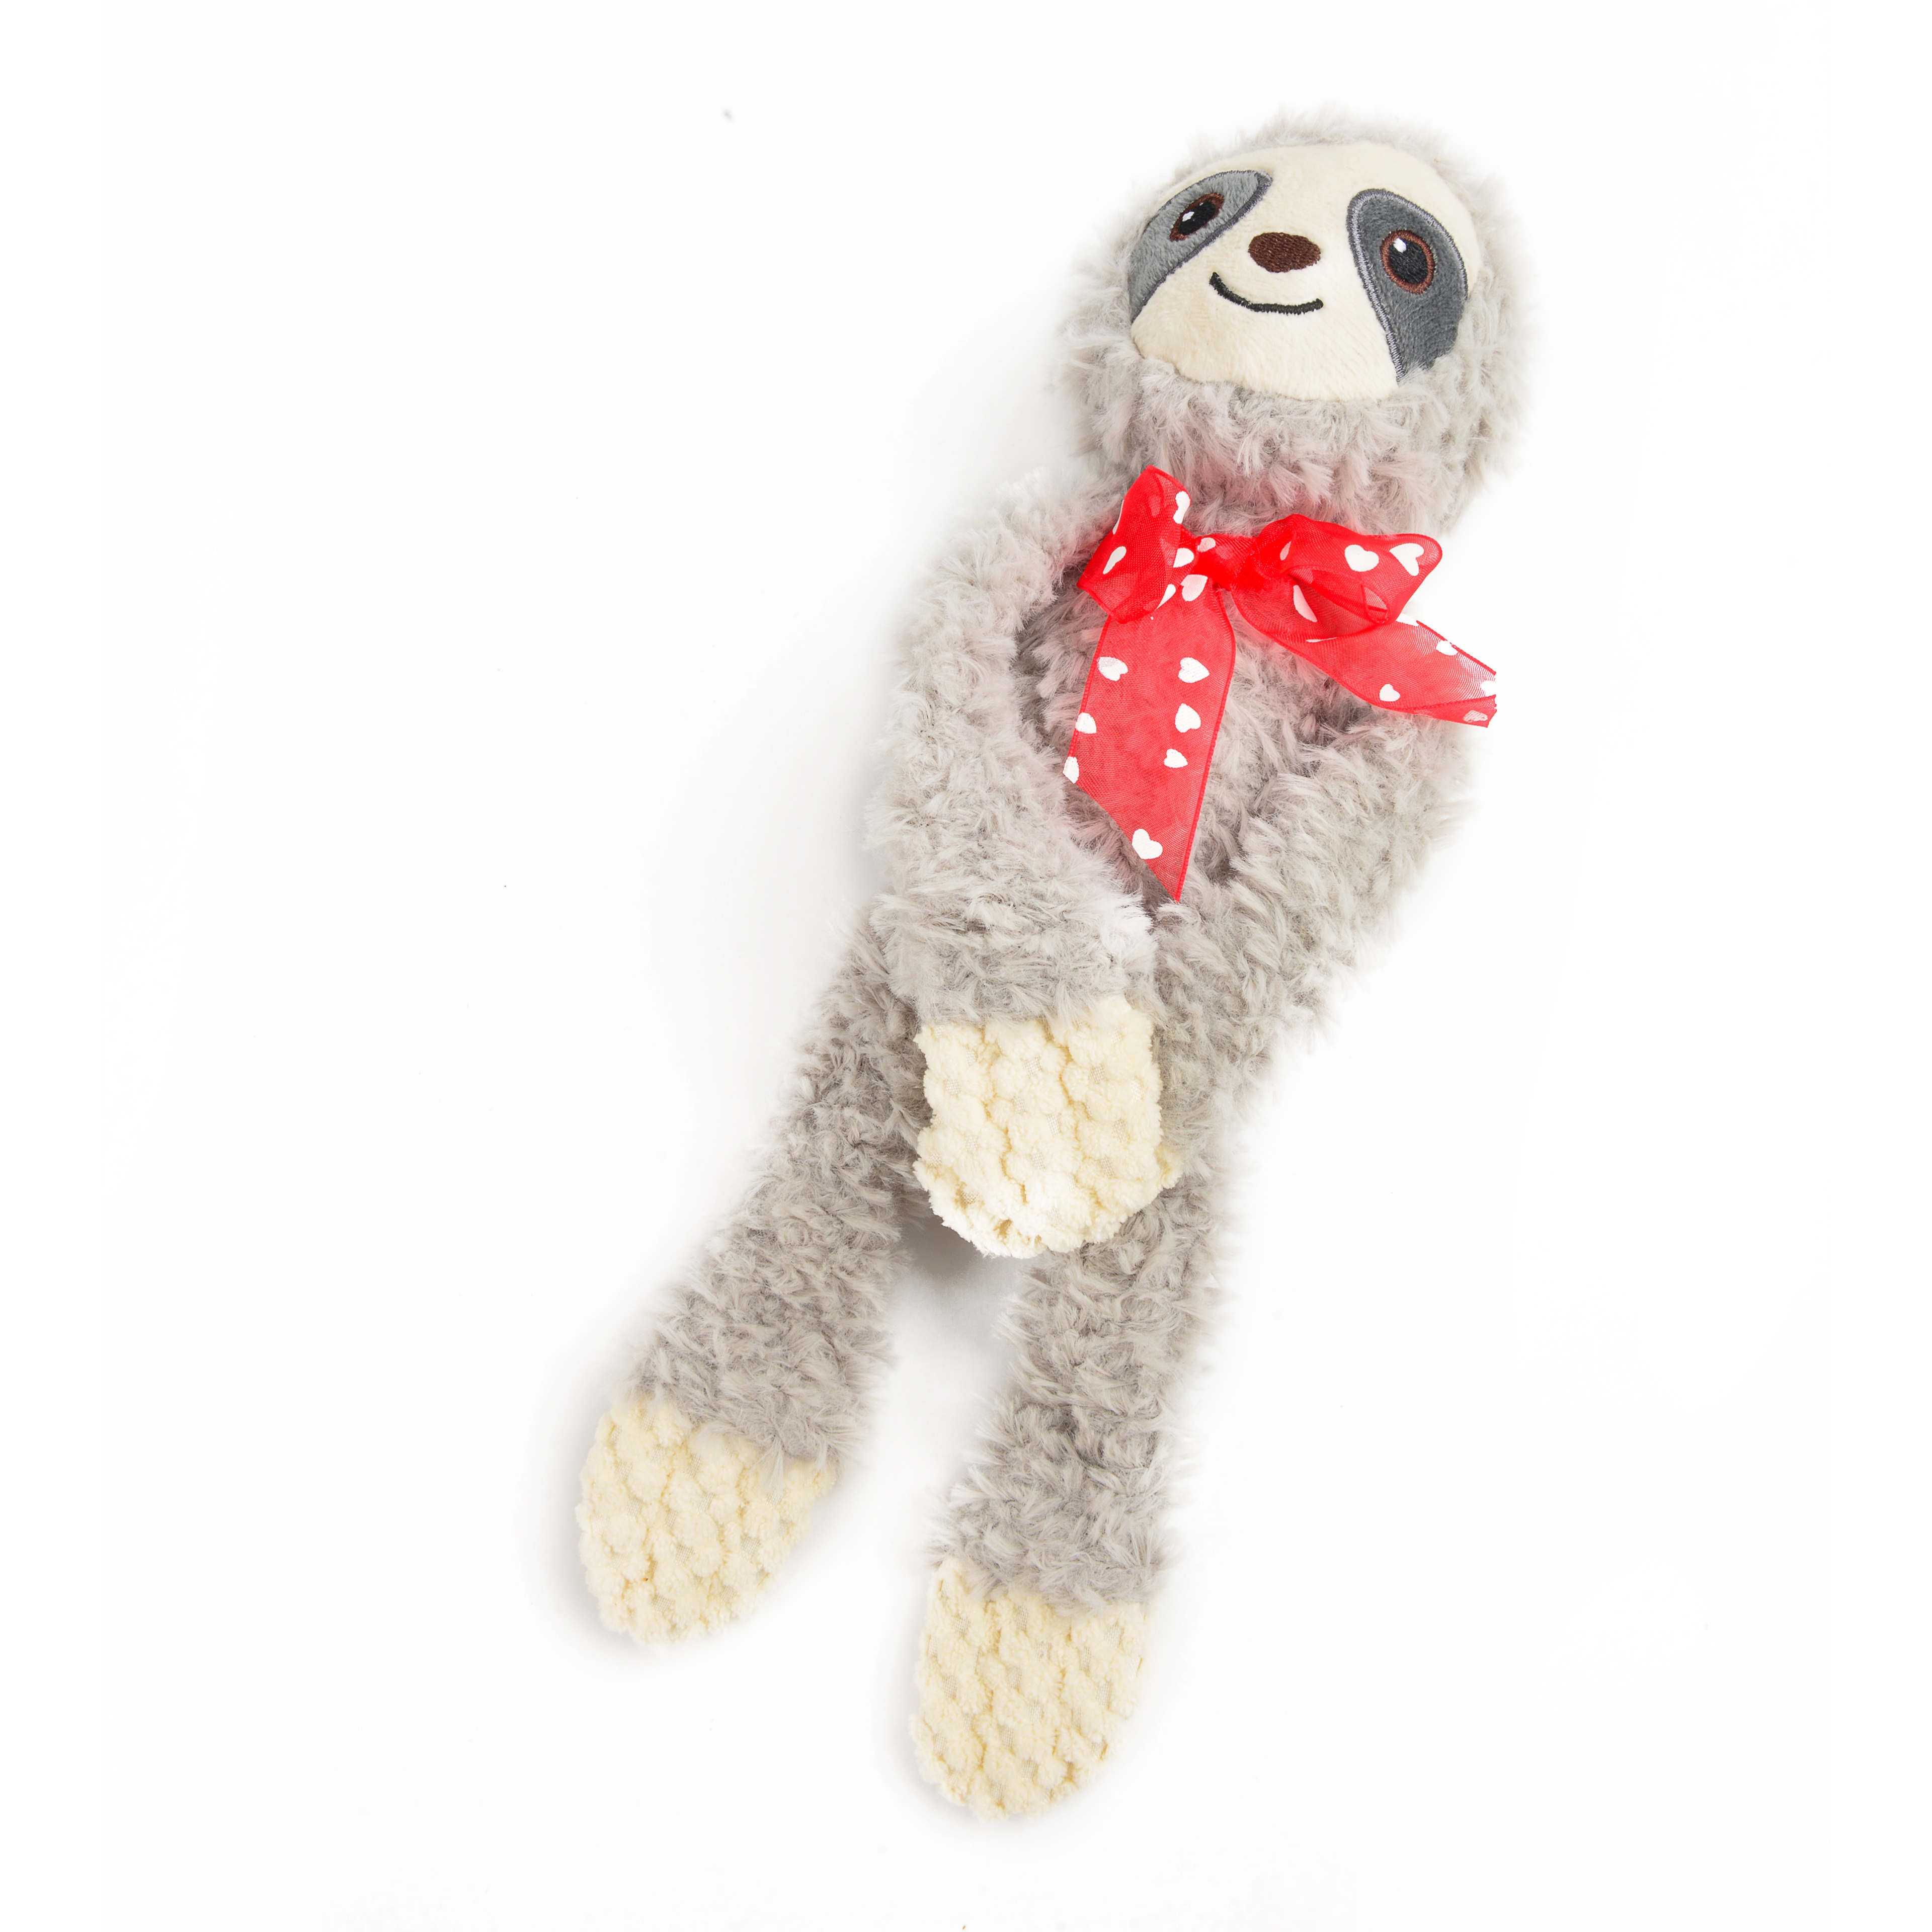 毛绒玩具动物娃娃树懒猴子戴领结公仔儿童玩具